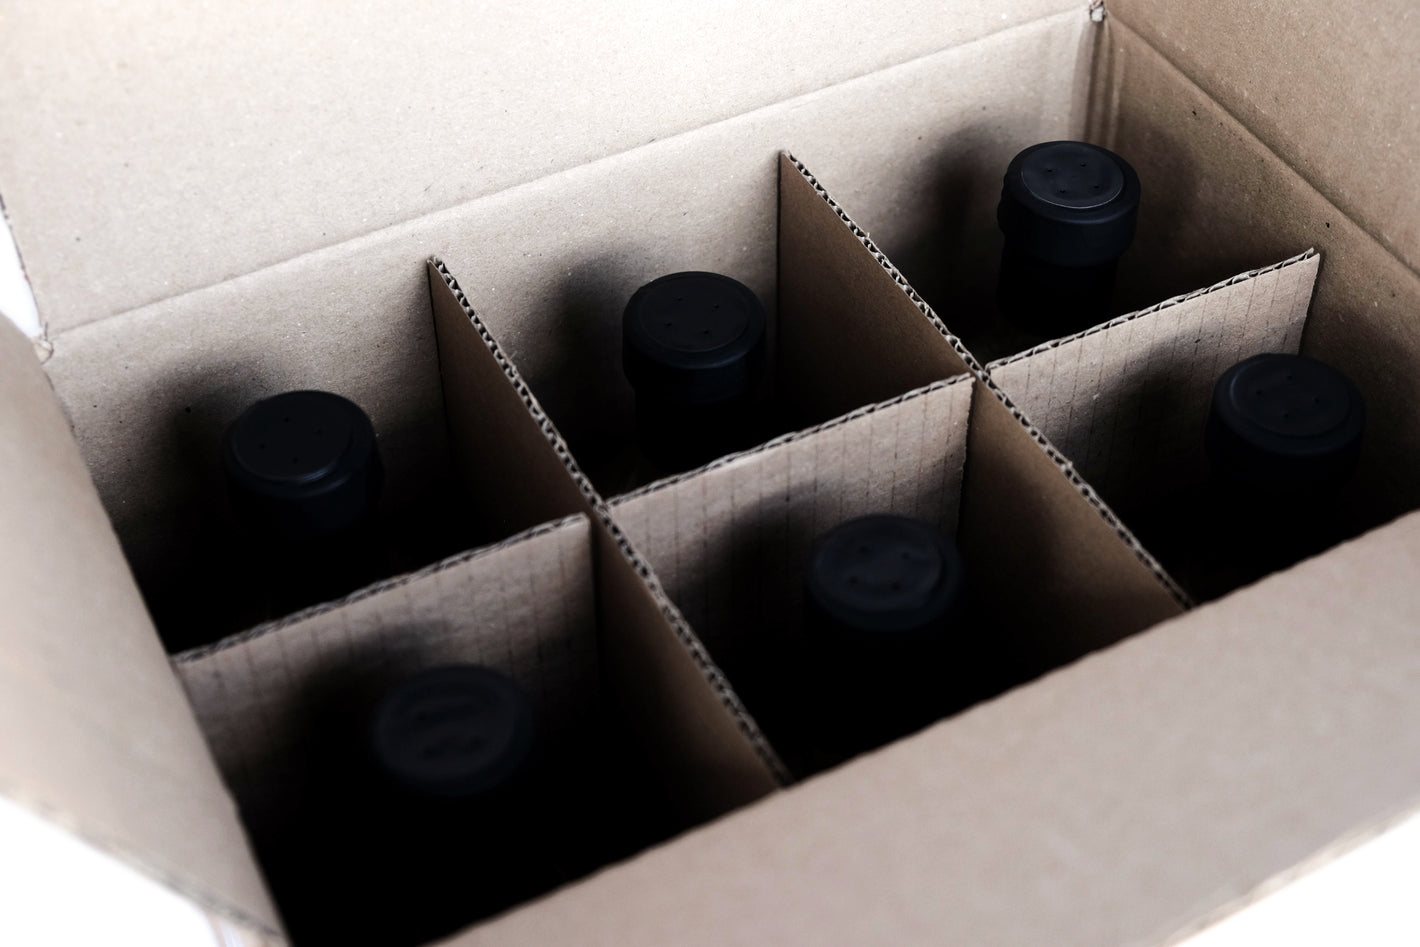 Geschenke kaufen | Box mit 6 Flaschen zum Preis von 5 | Mengenrabatt + Kostenloser Versand innerhalb Deutschlands | Ingwersirup BIO GINGER PREMIUM MIX | BIOGINGER.DE